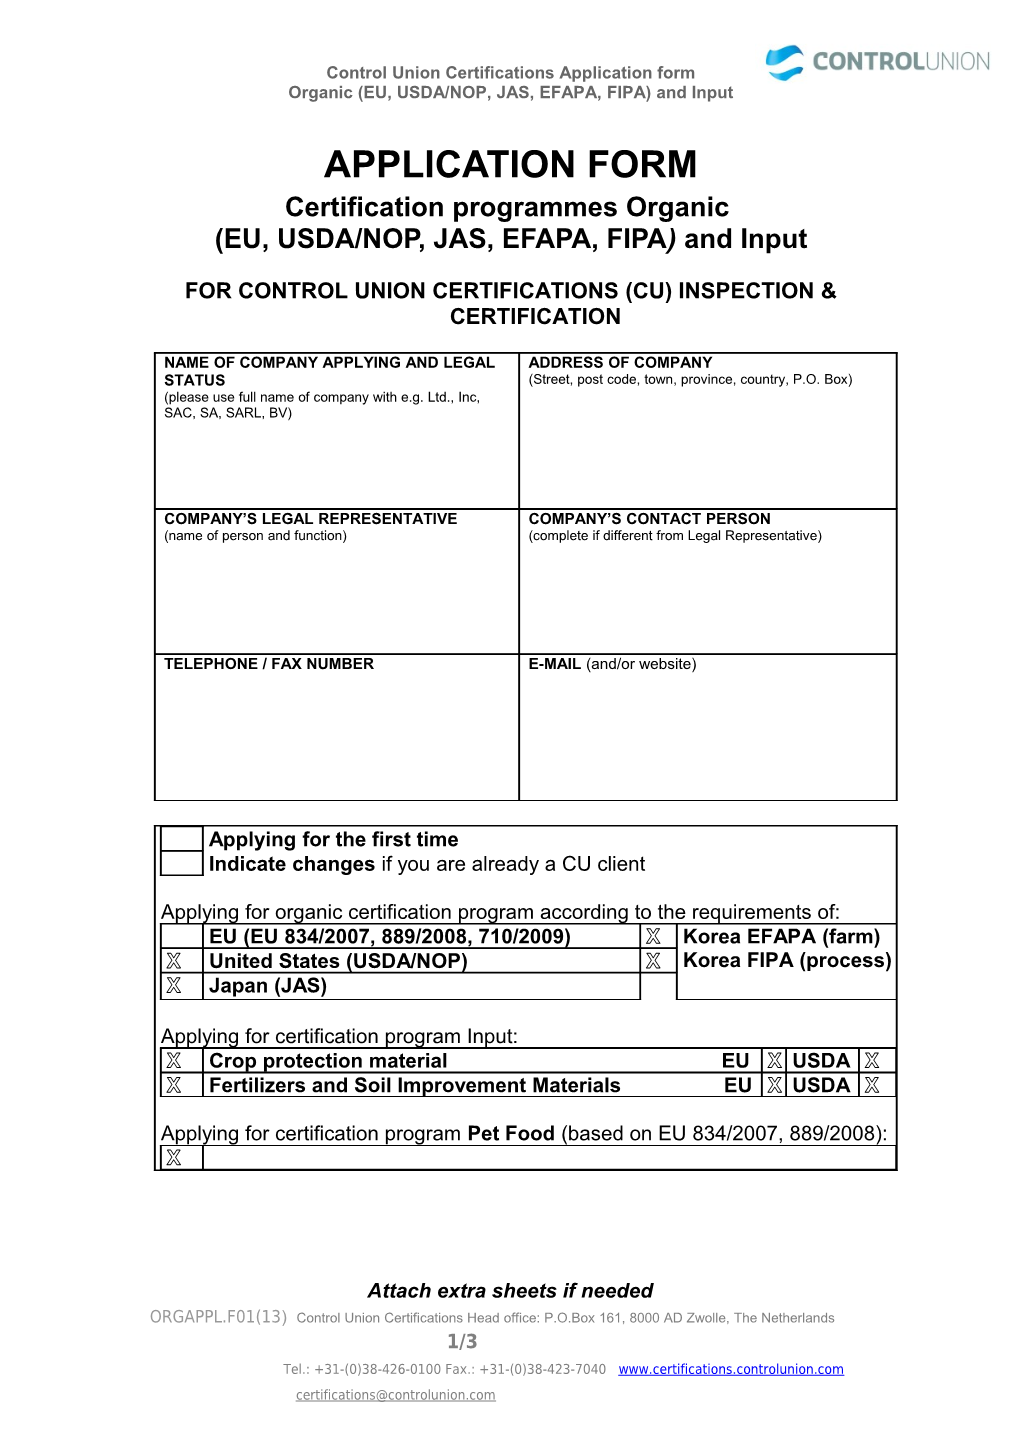 Organic (EU, USDA/NOP, JAS, EFAPA, FIPA) and Input